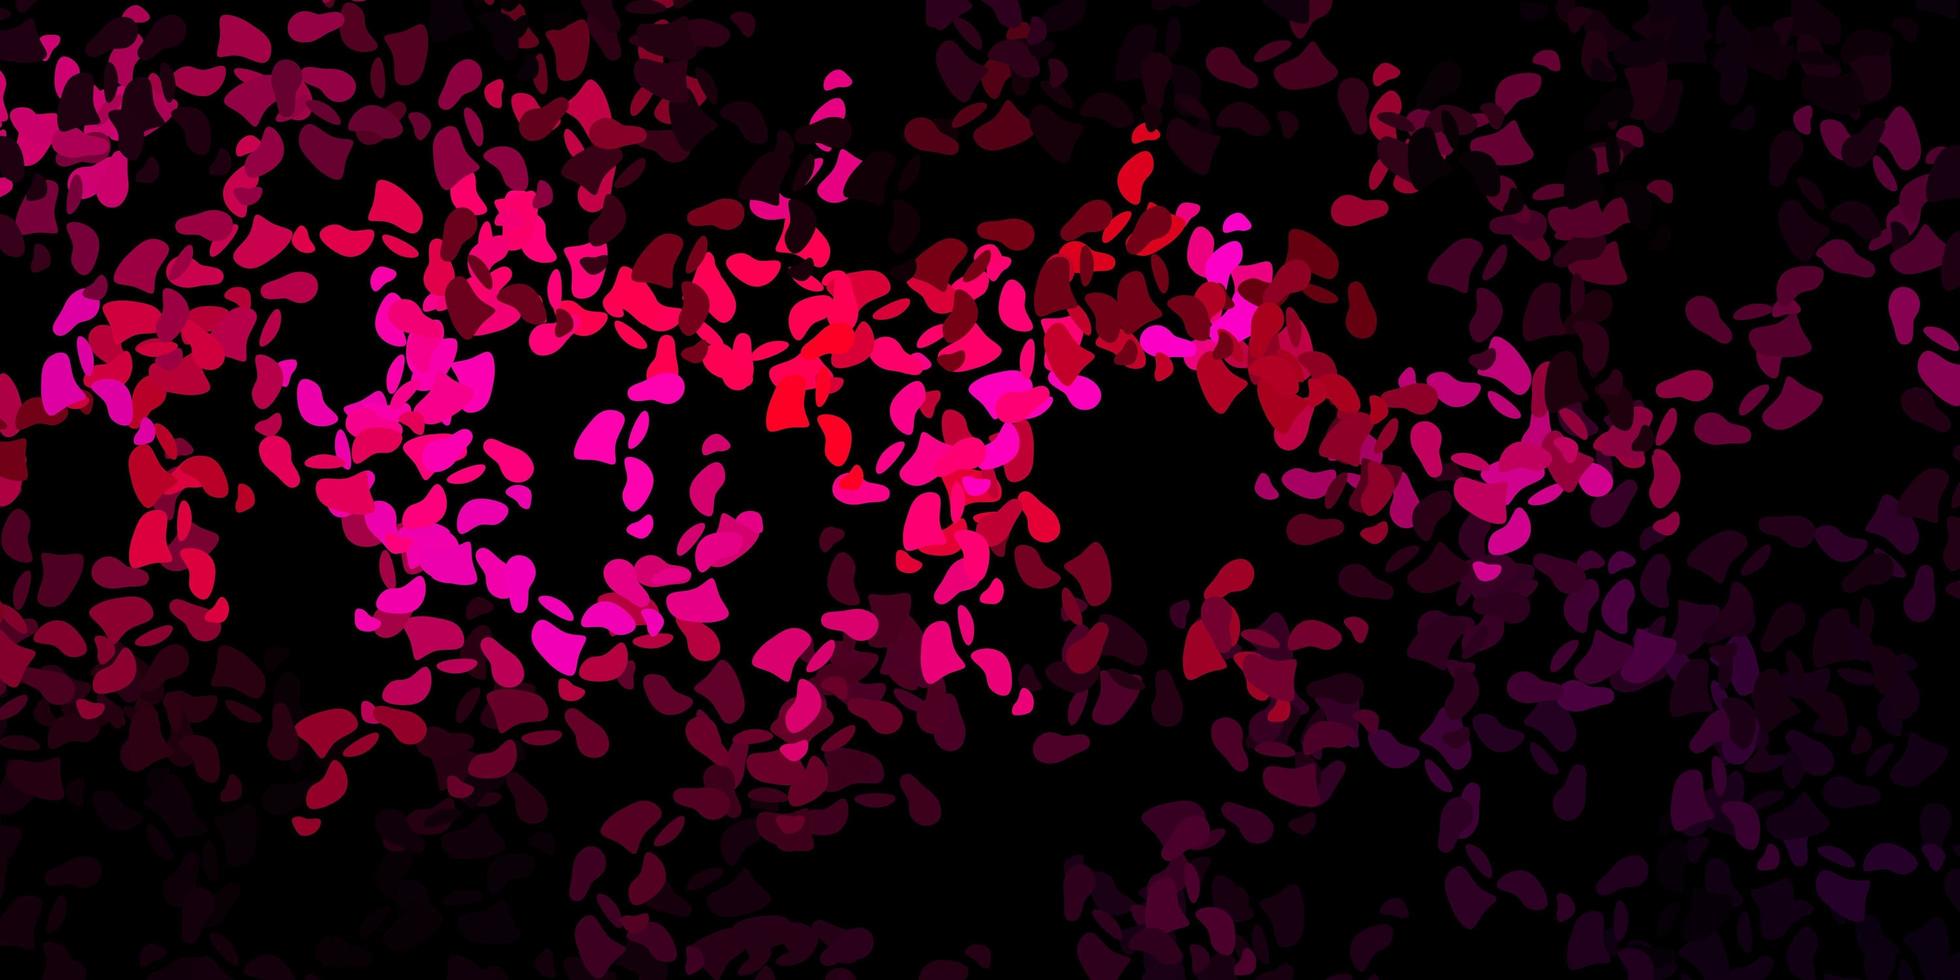 modello vettoriale rosa scuro con forme astratte.